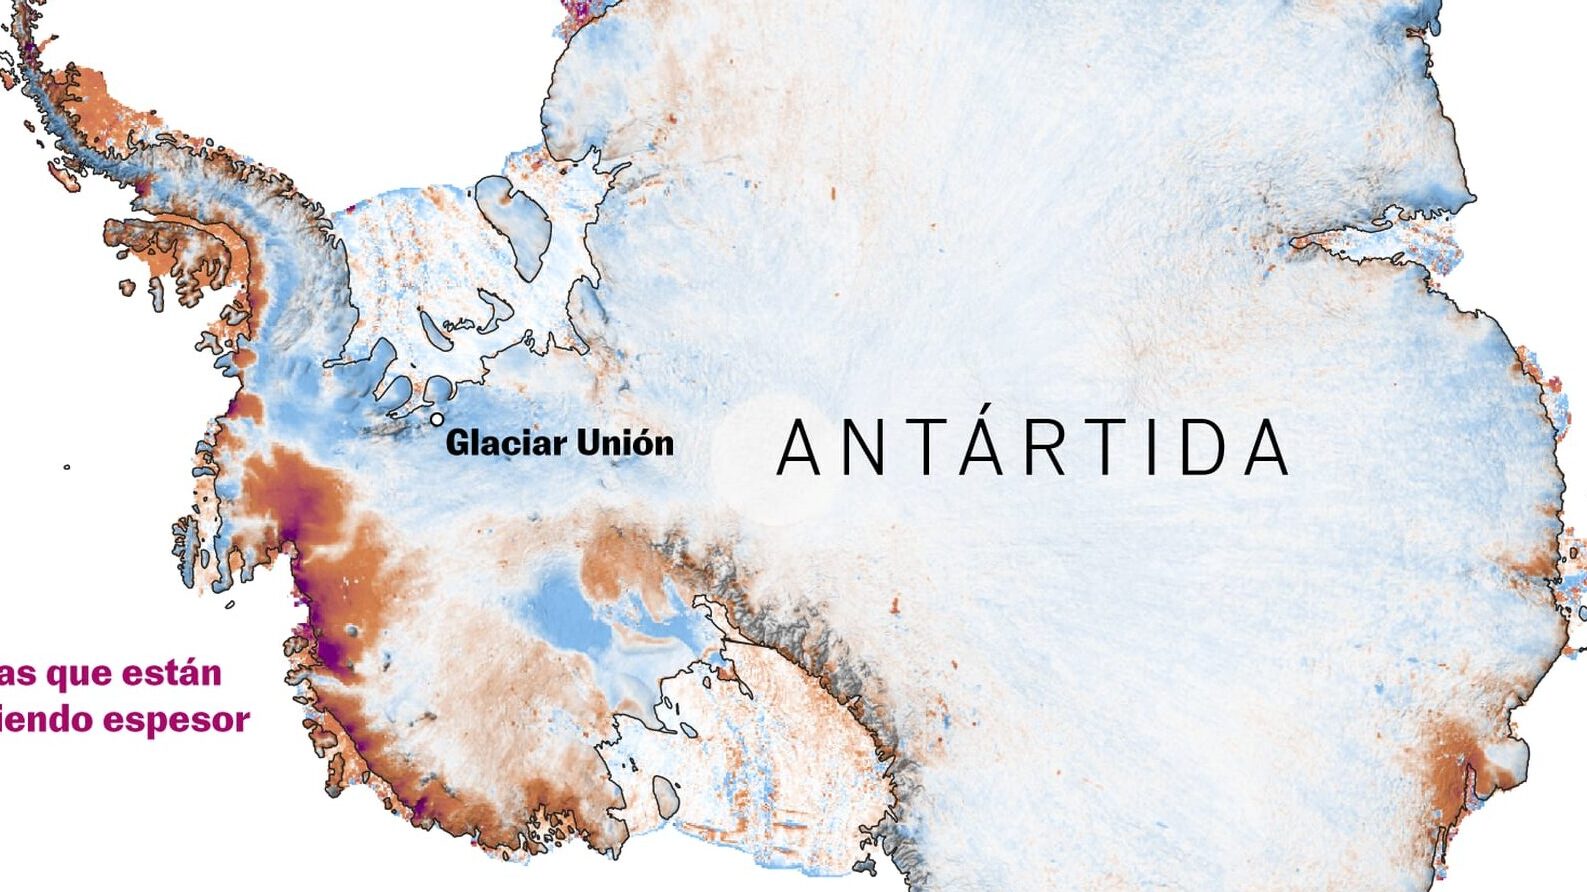 Distancia de Argentina a la Antártida: ¿Qué tan lejos están realmente?